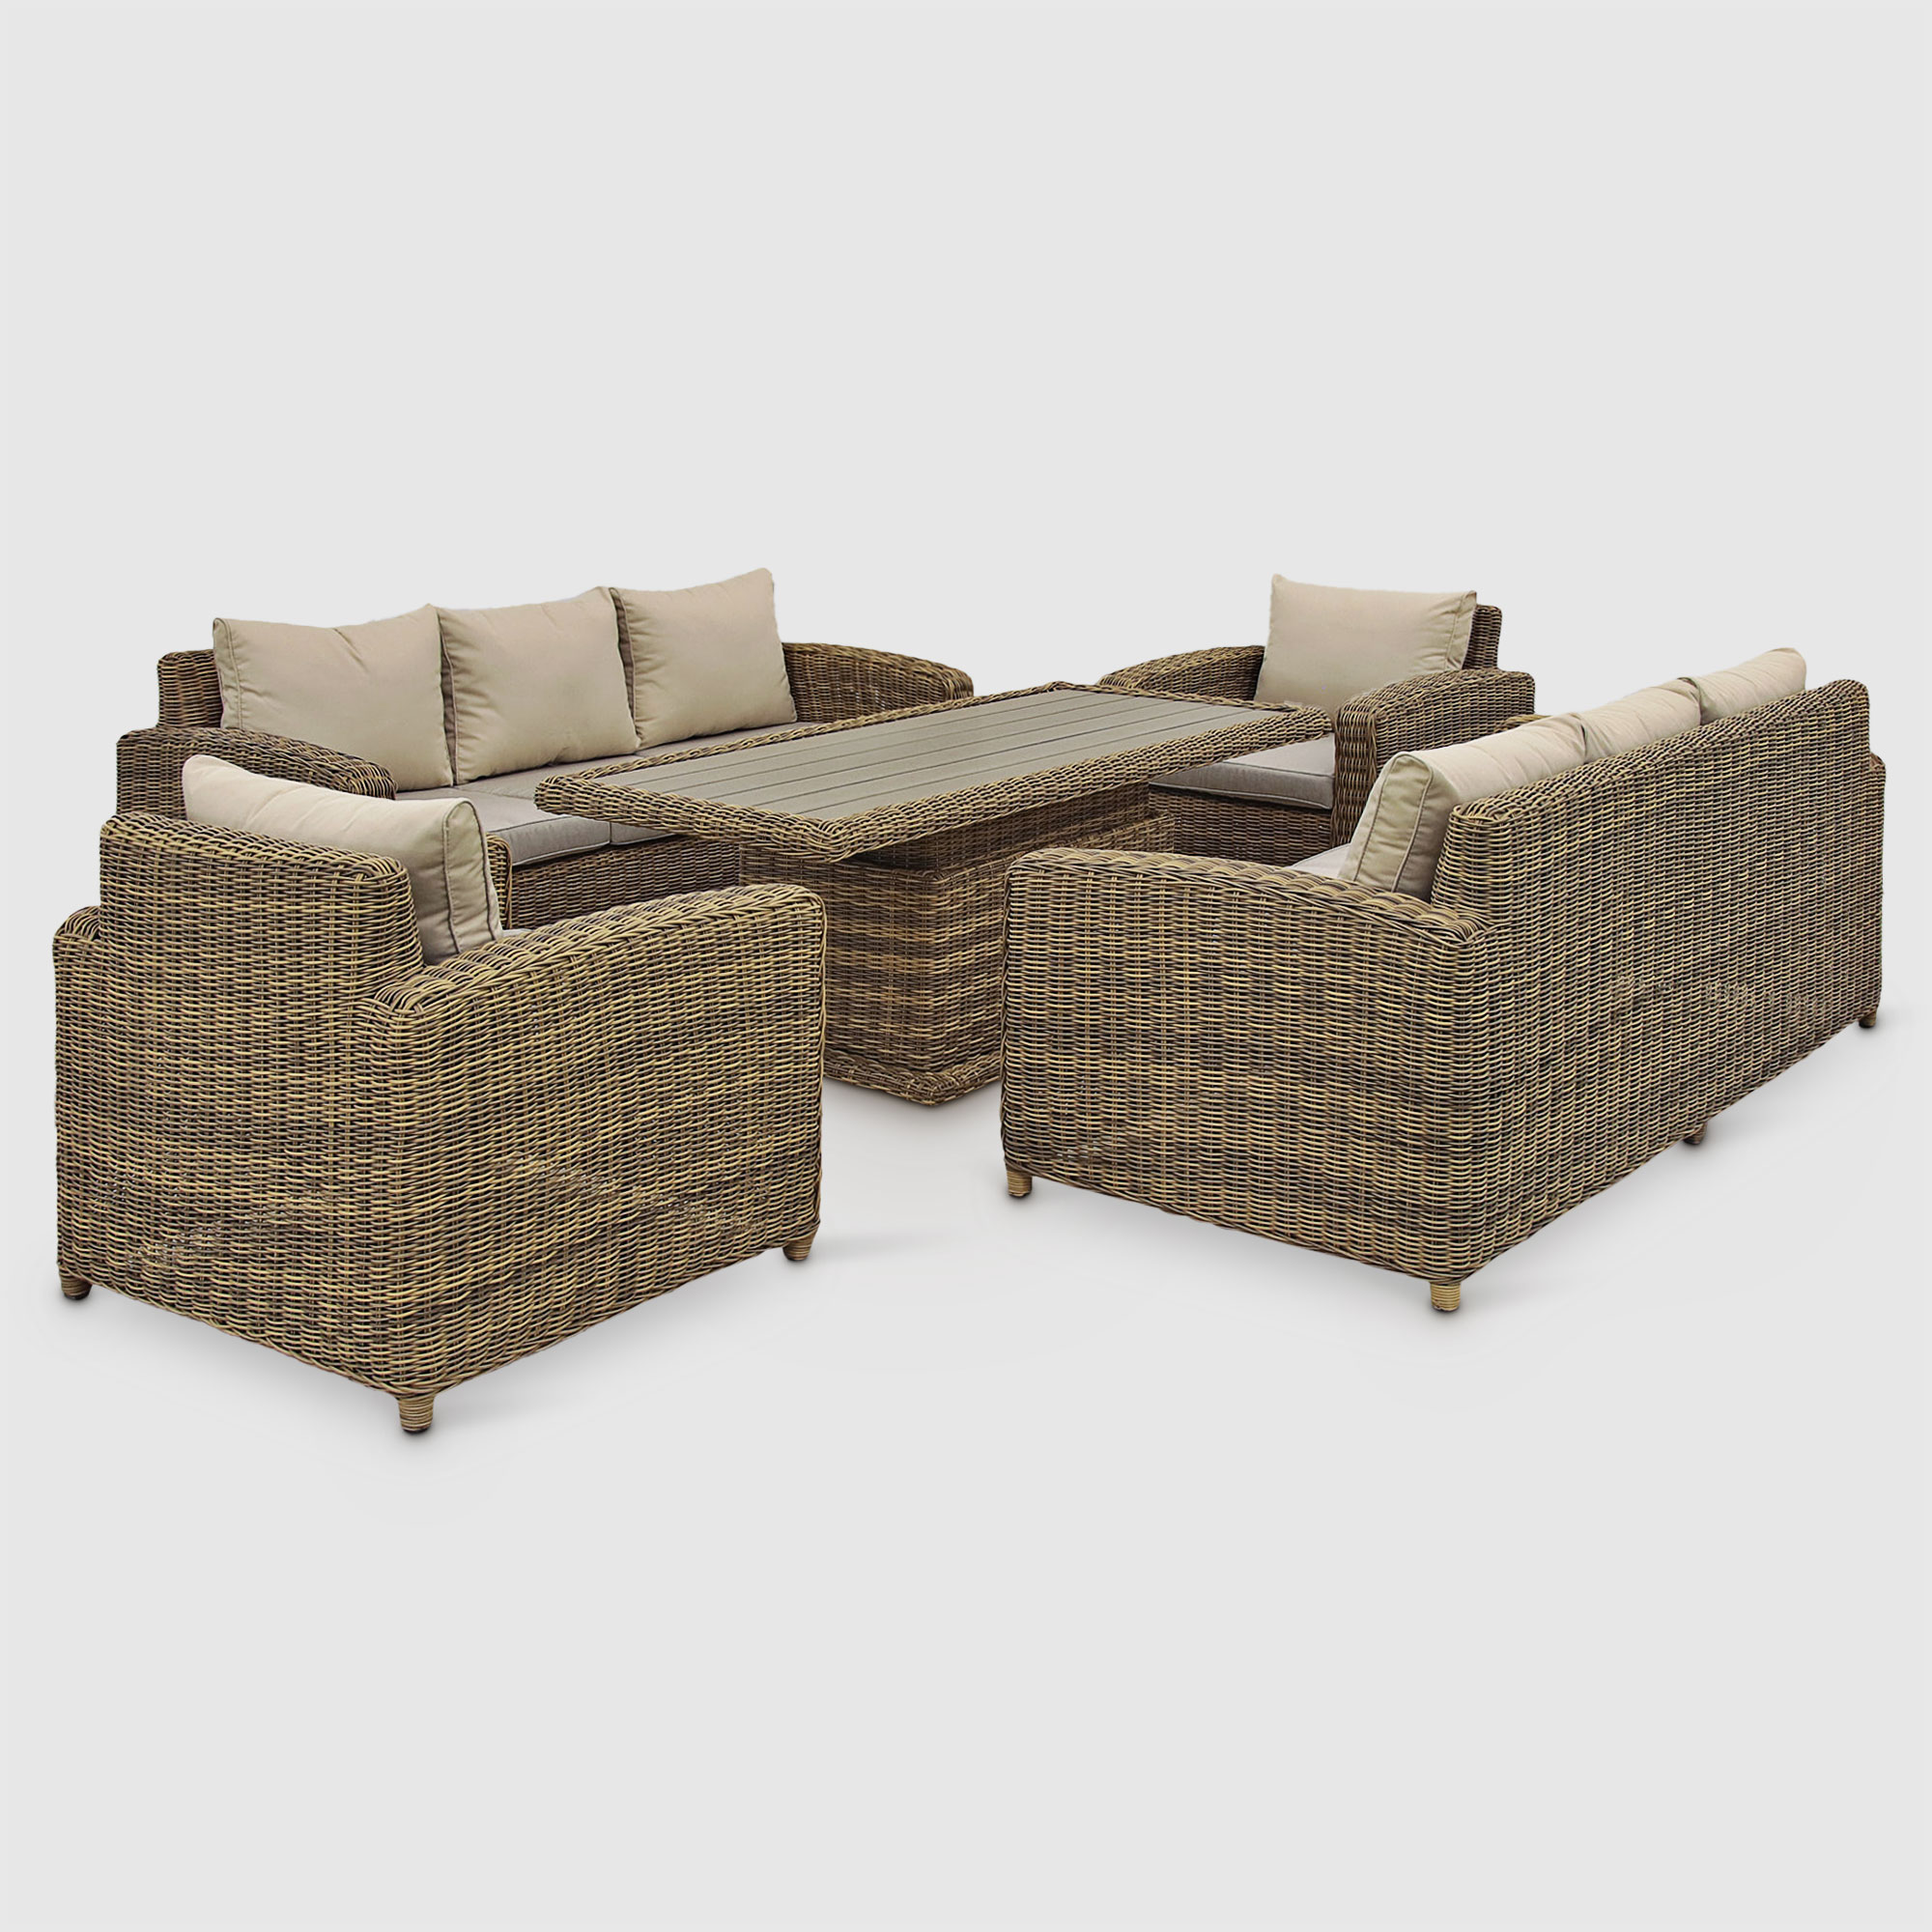 Комплект садовой мебели Yuhang коричнево-бежевый из 5 предметов, цвет коричневый, размер 210х87х81